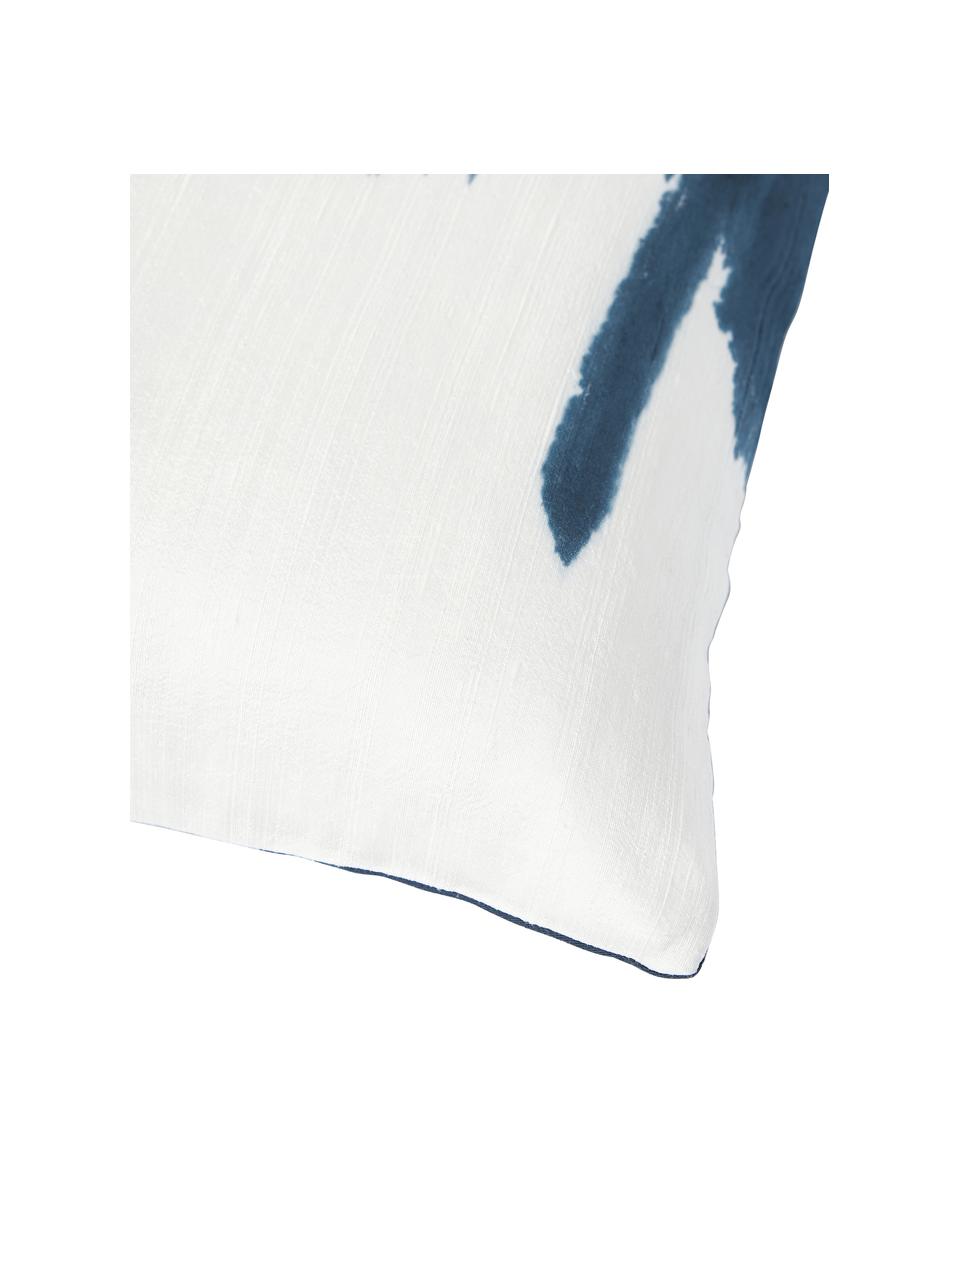 Kissenhülle Aryane aus Seide, Vorderseite: 100 % Seide, Rückseite: 100% Baumwolle, Blau, Weiß, B 45 x L 45 cm